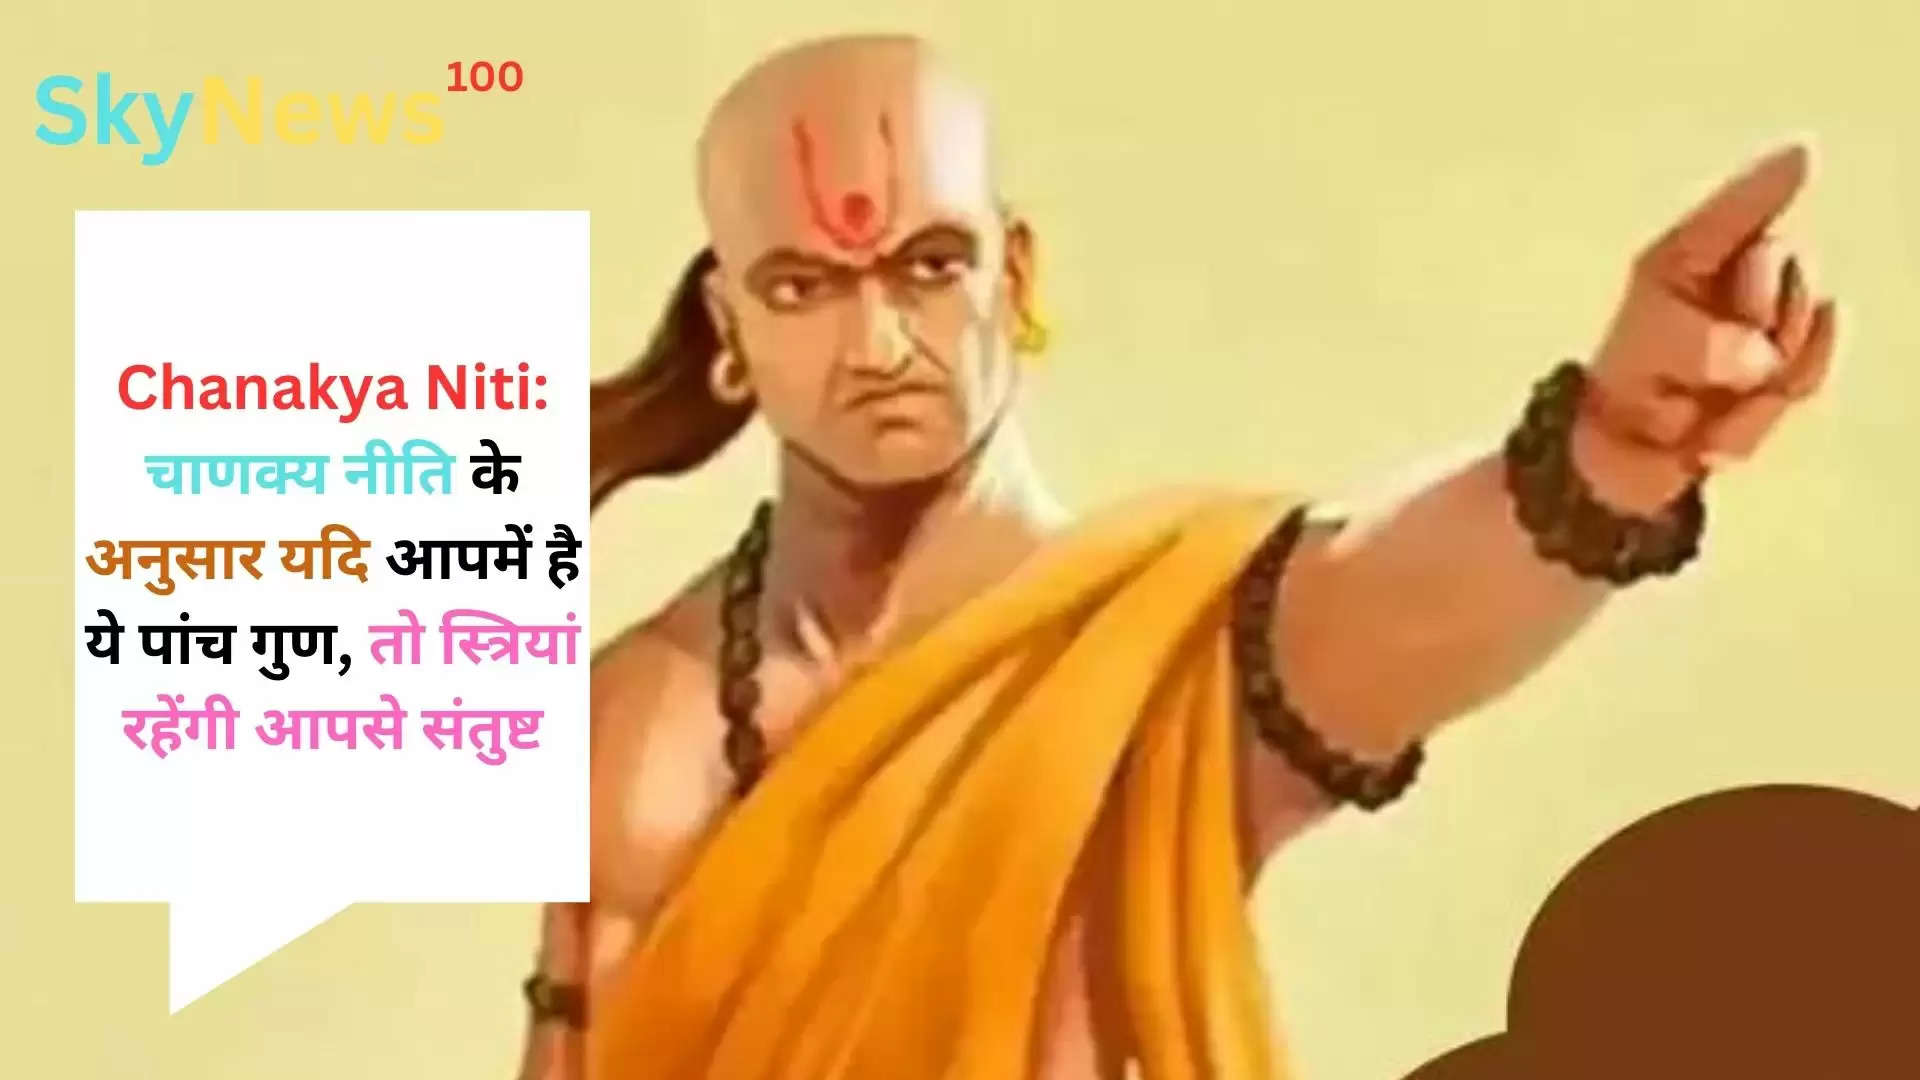 Chanakya Niti: चाणक्य नीति के अनुसार यदि आपमें है ये पांच गुण, तो स्त्रियां रहेंगी आपसे संतुष्ट